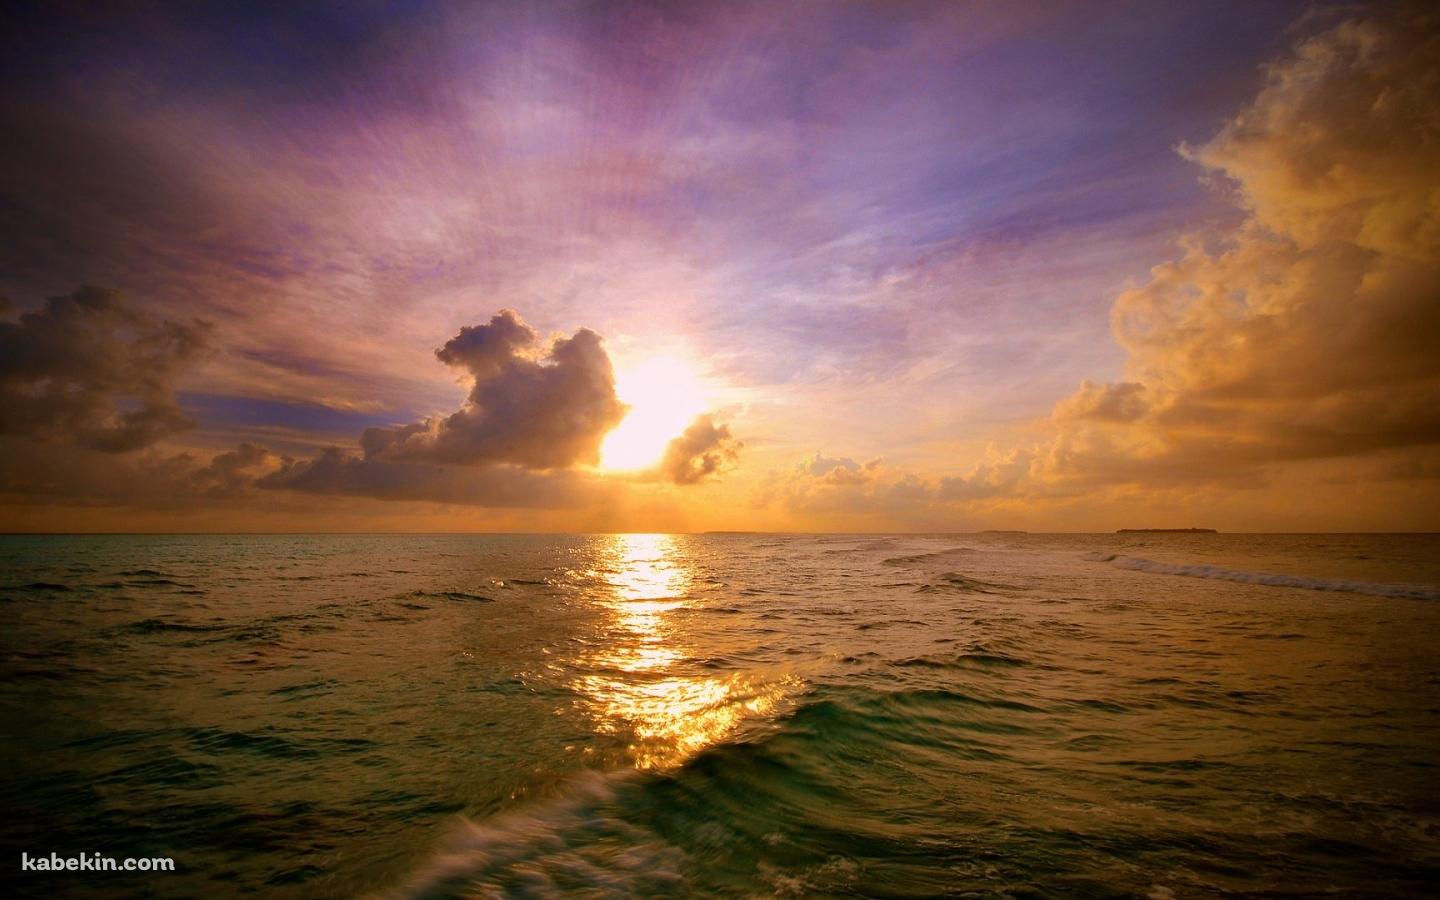 モルディブの海と夕日の壁紙(1440px x 900px) 高画質 PC・デスクトップ用